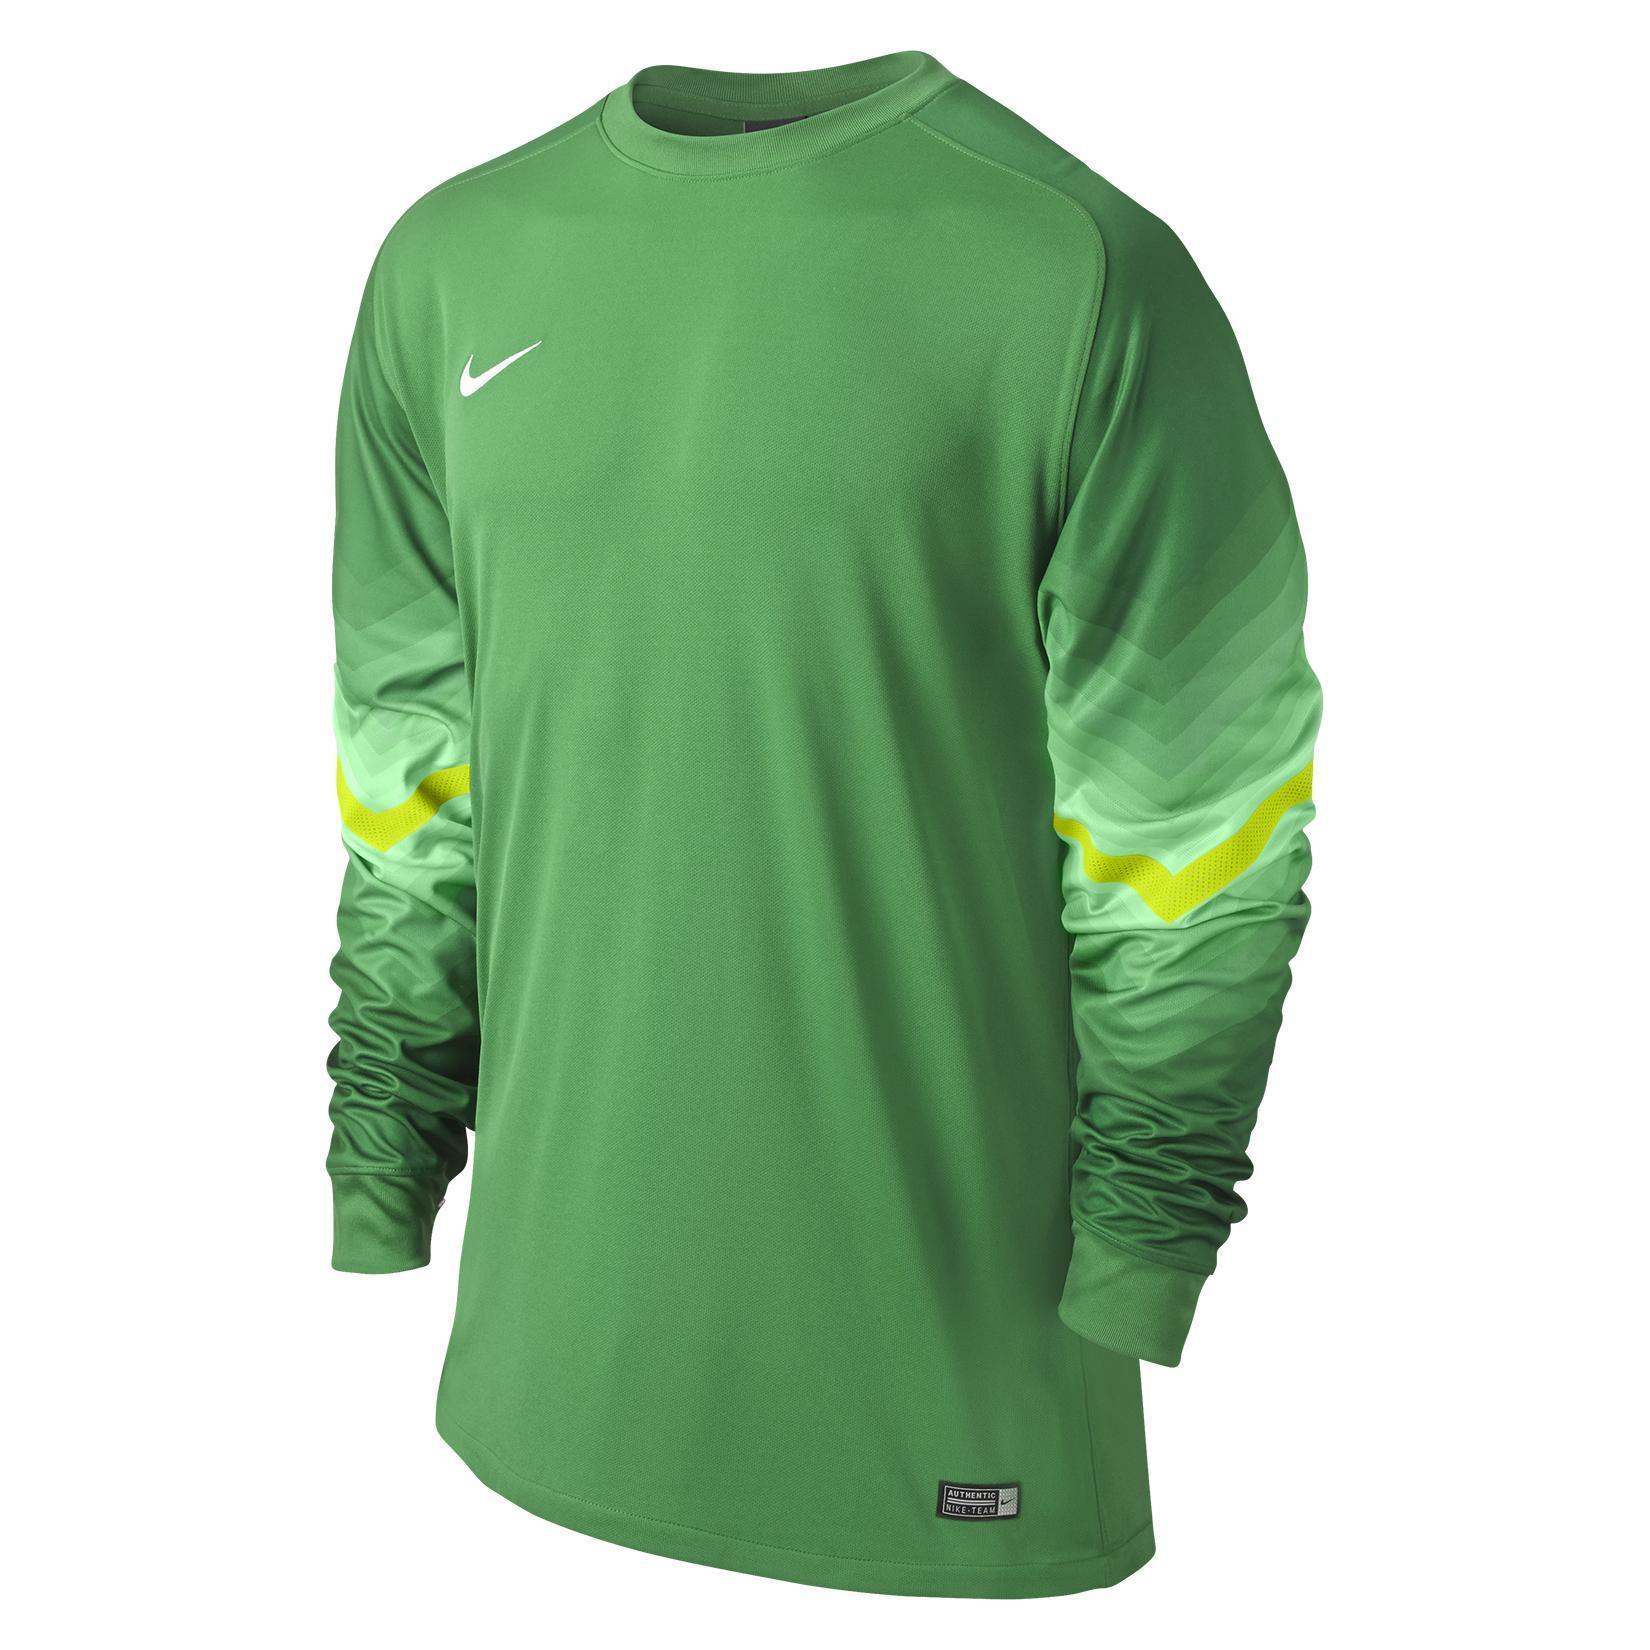 Nike Goleiro Long Sleeve Football Goalkeeper Kit - Kitlocker.com